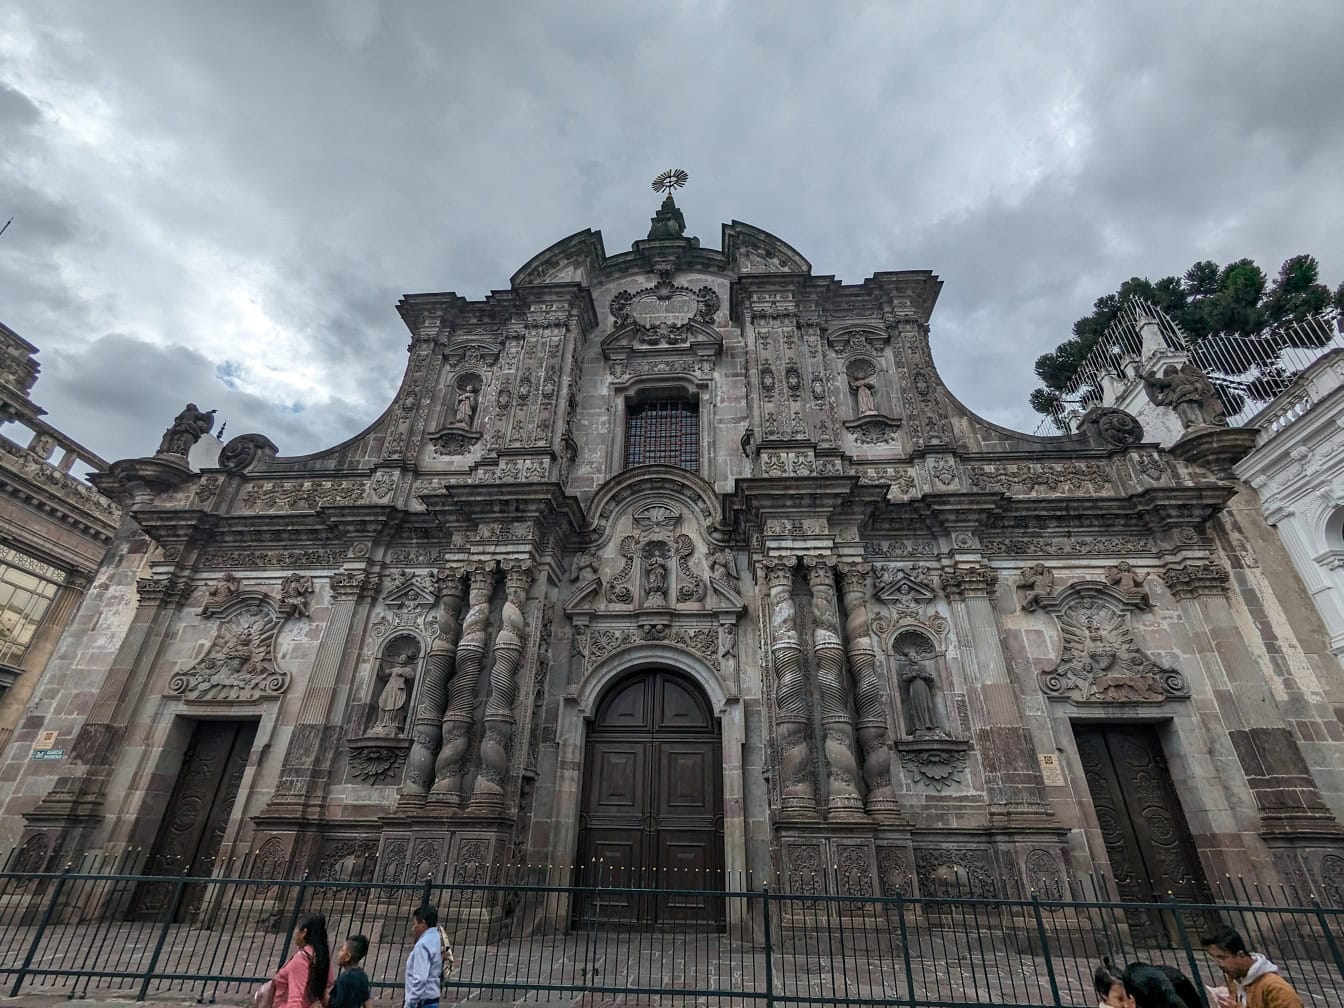 Rímskokatolícky kostol a kláštor sv. Ignáca z Loyoly zo Spoločnosti Ježišovej v Quite, hlavnom meste Ekvádoru